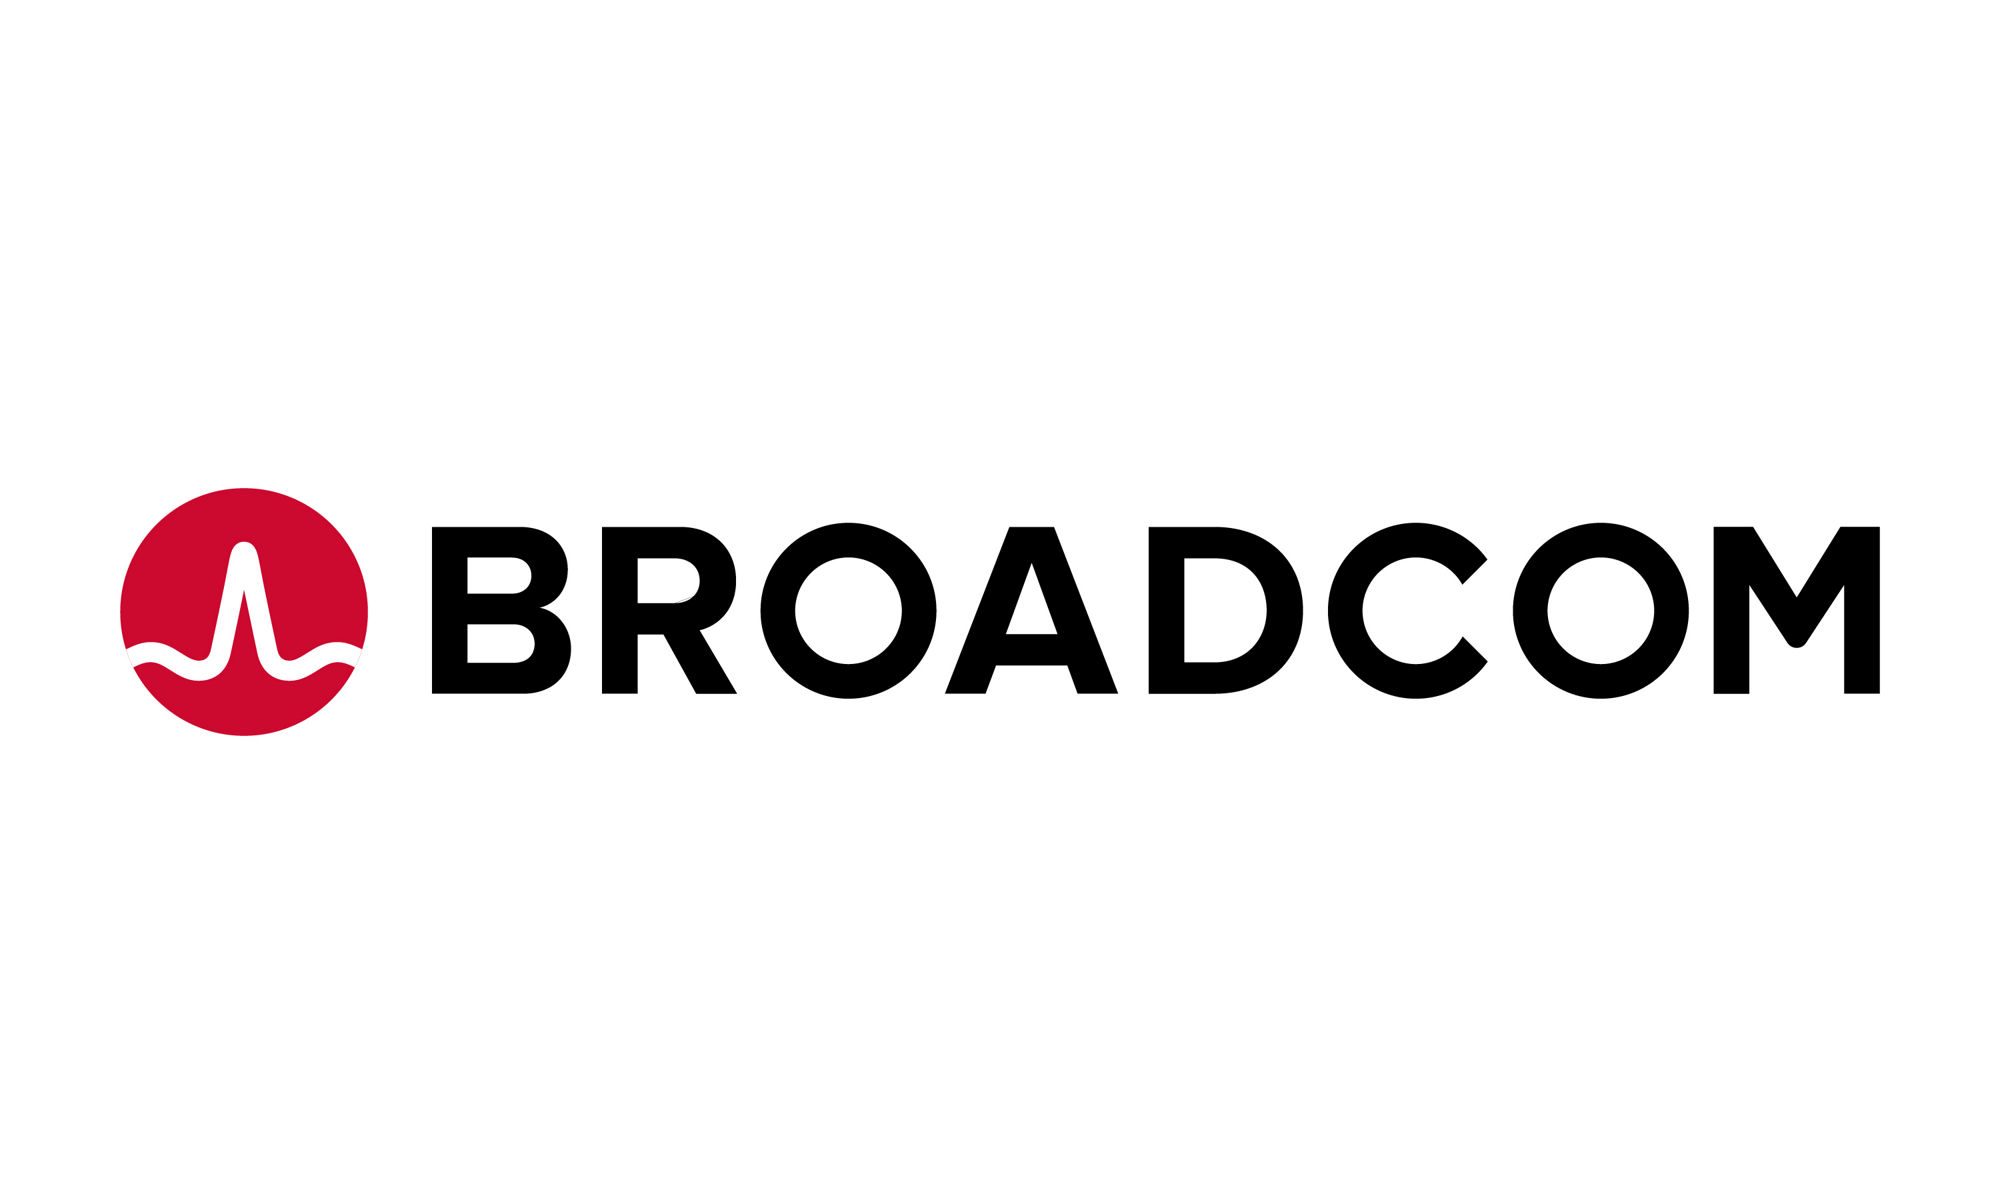 boradcom logo